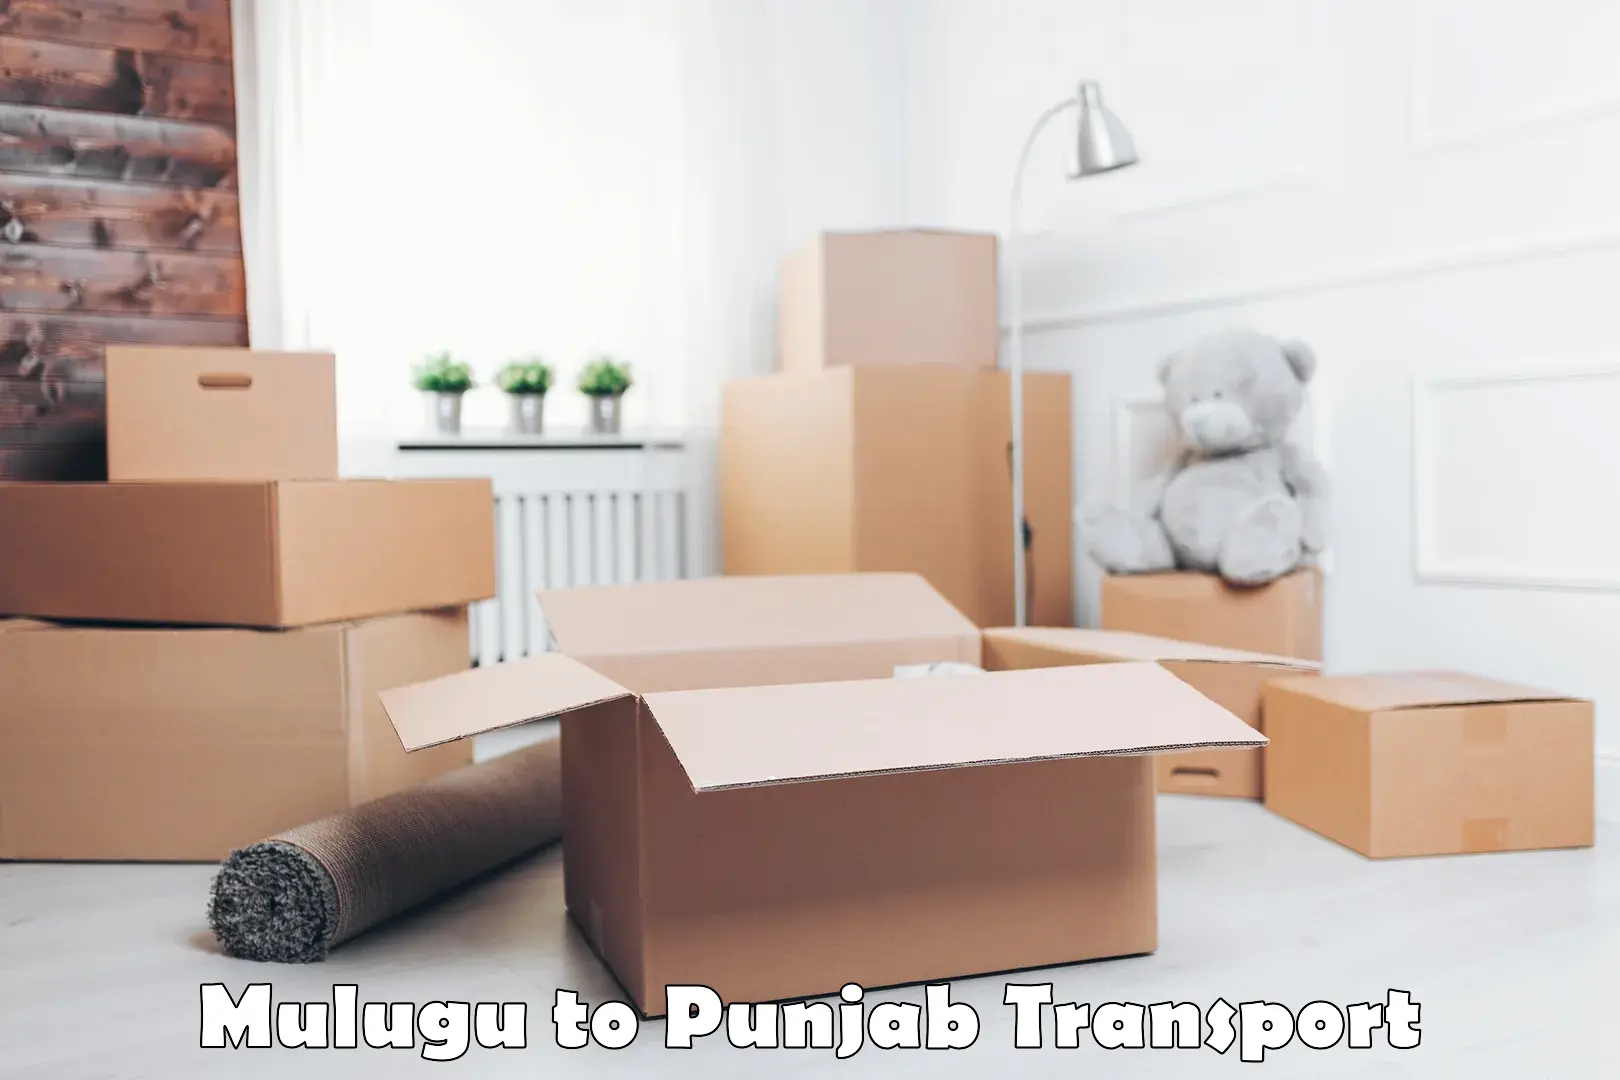 Interstate transport services Mulugu to Punjab